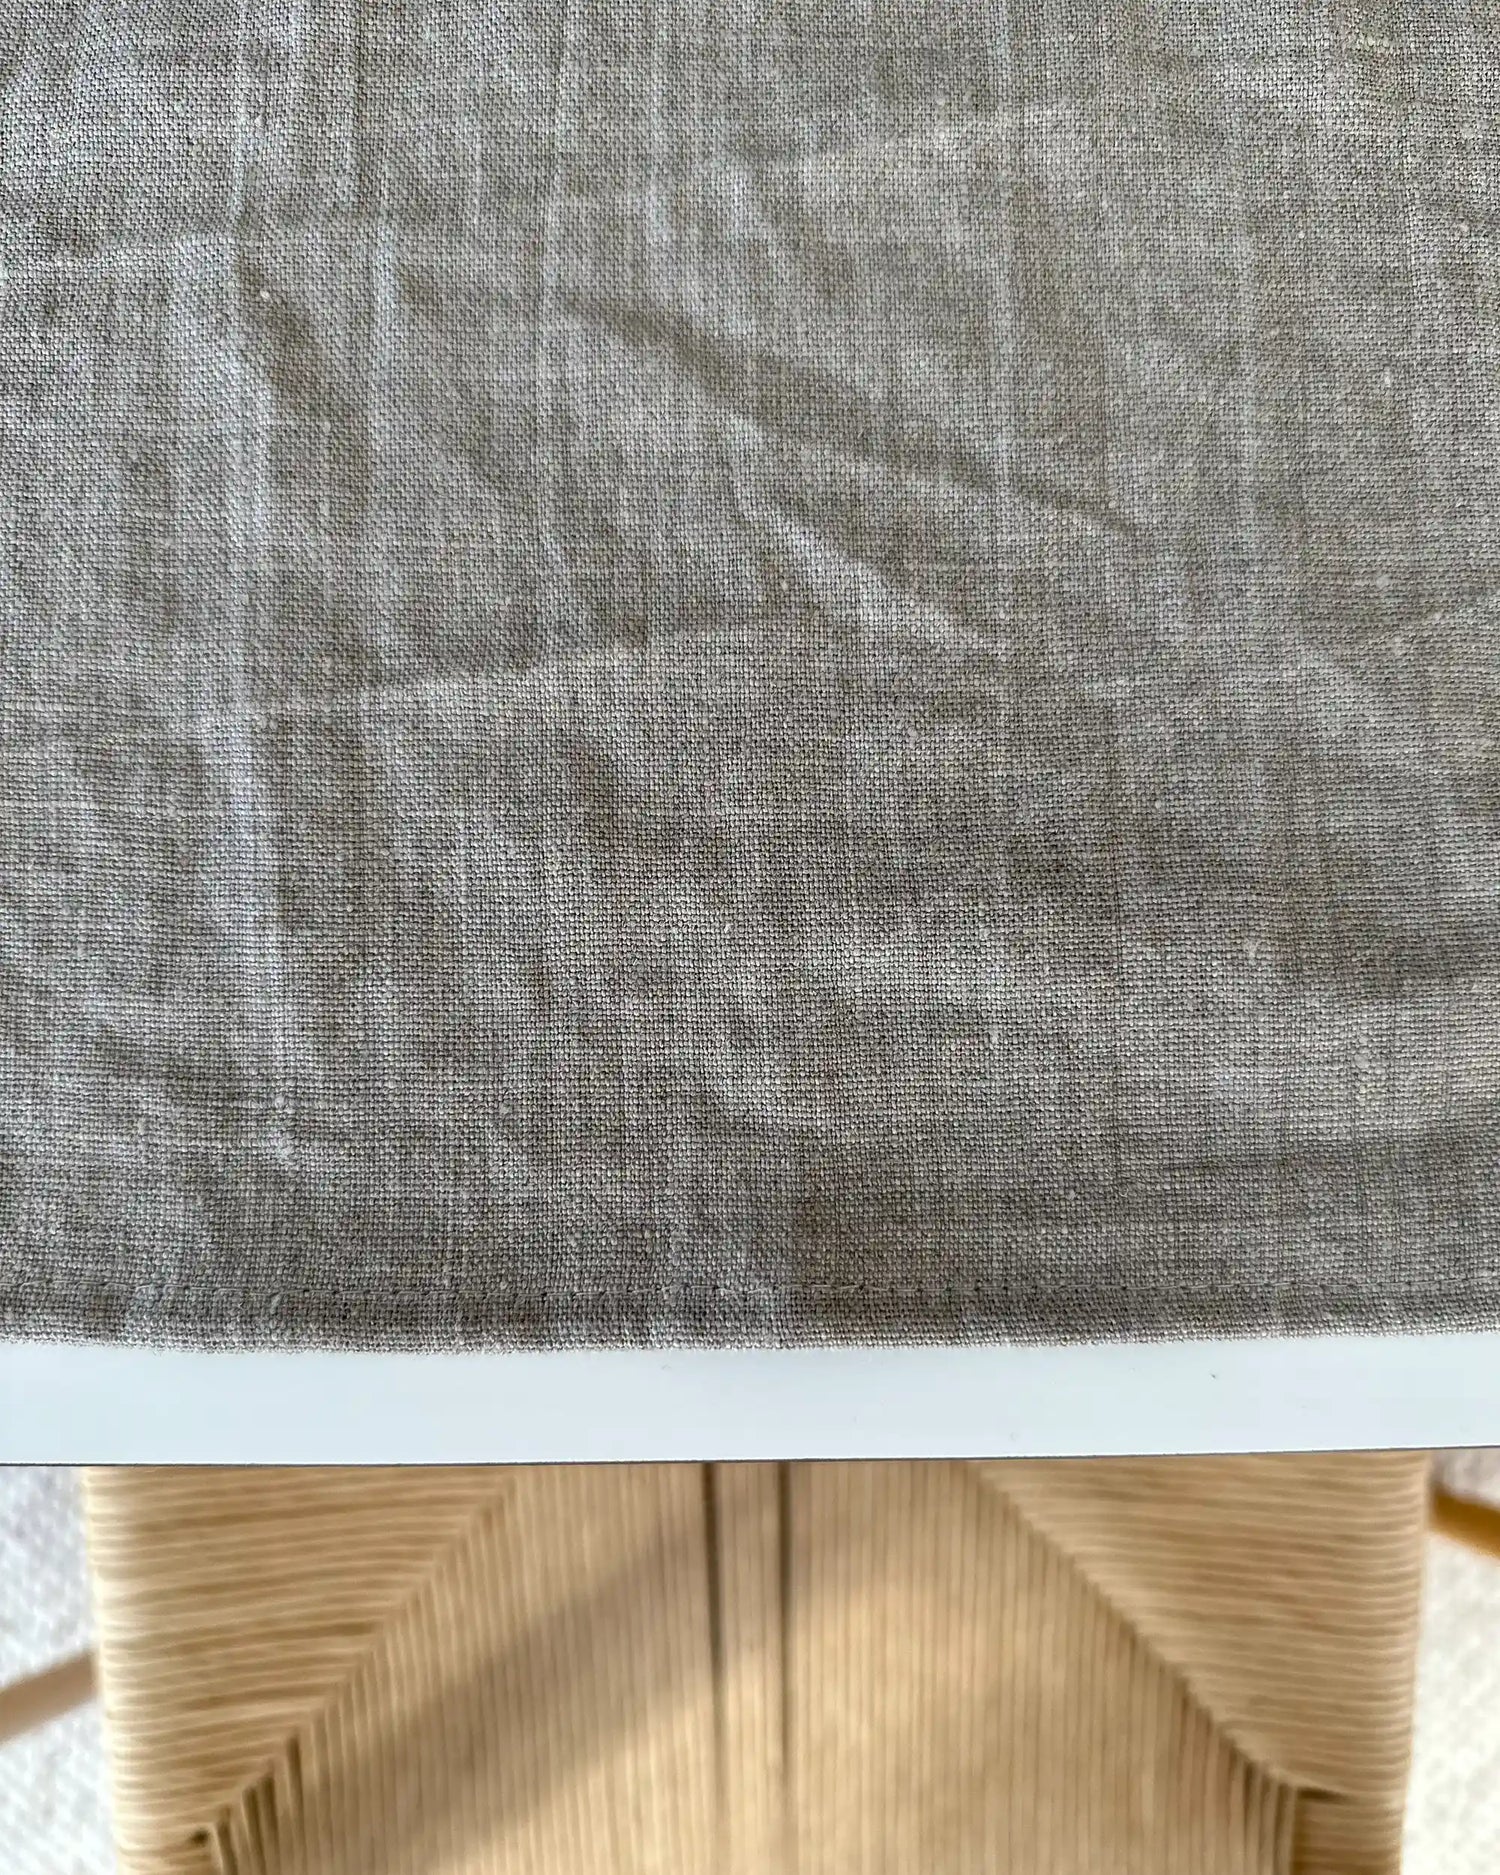 En handsydd kvadratiskt bordstablett i stentvättat linne. 